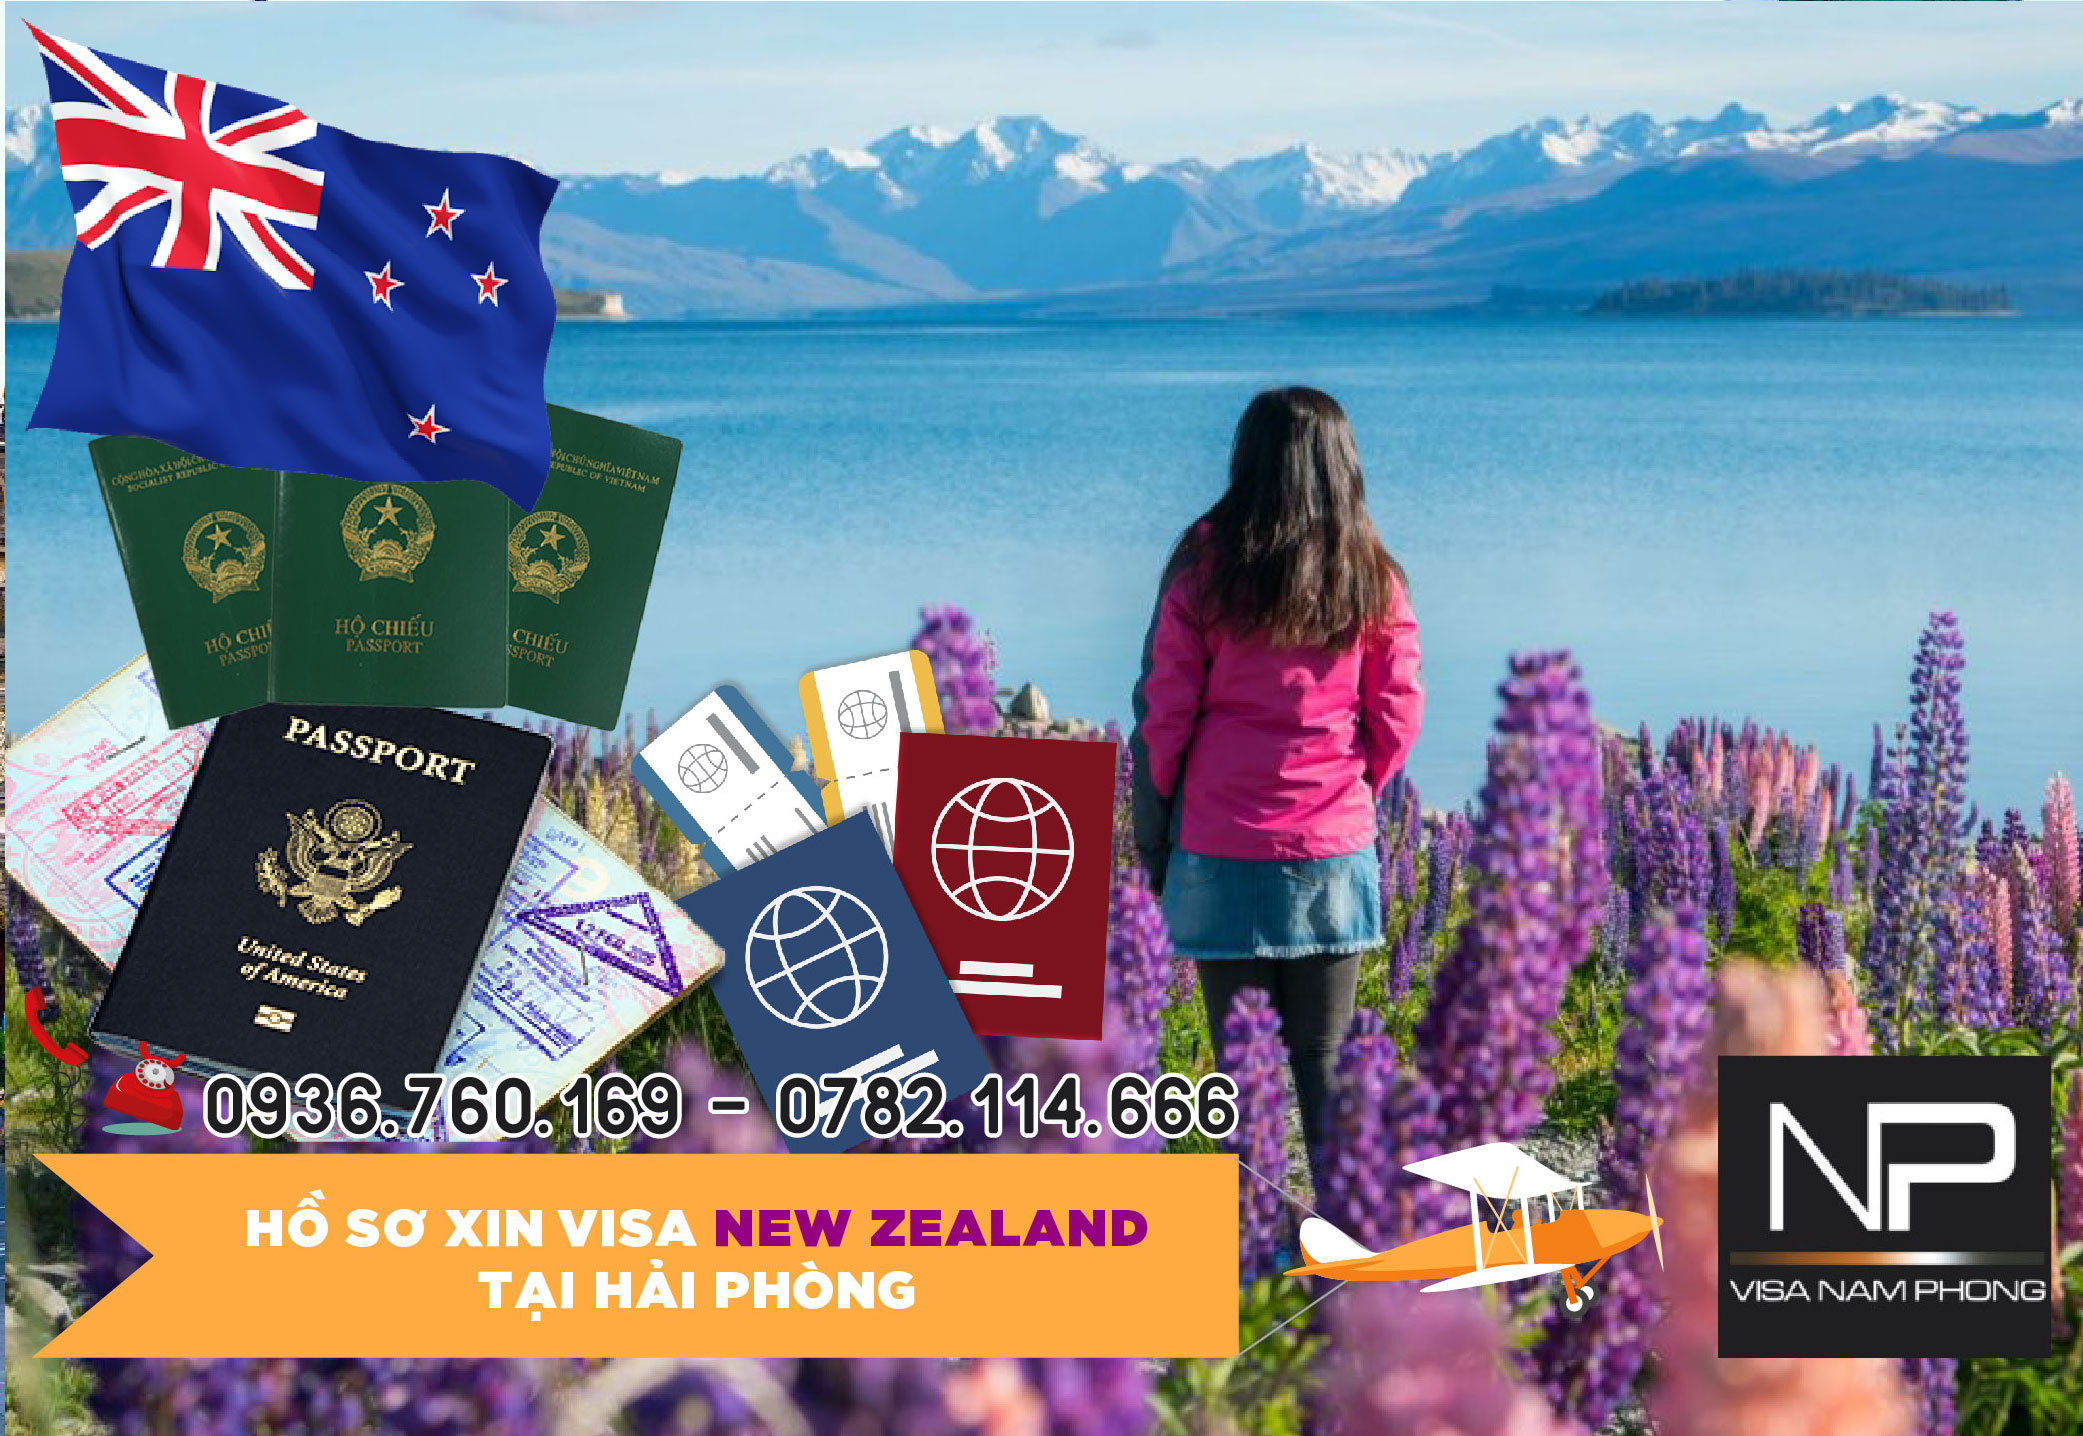 Hồ sơ xin visa New Zealand tại Hải Phòng	